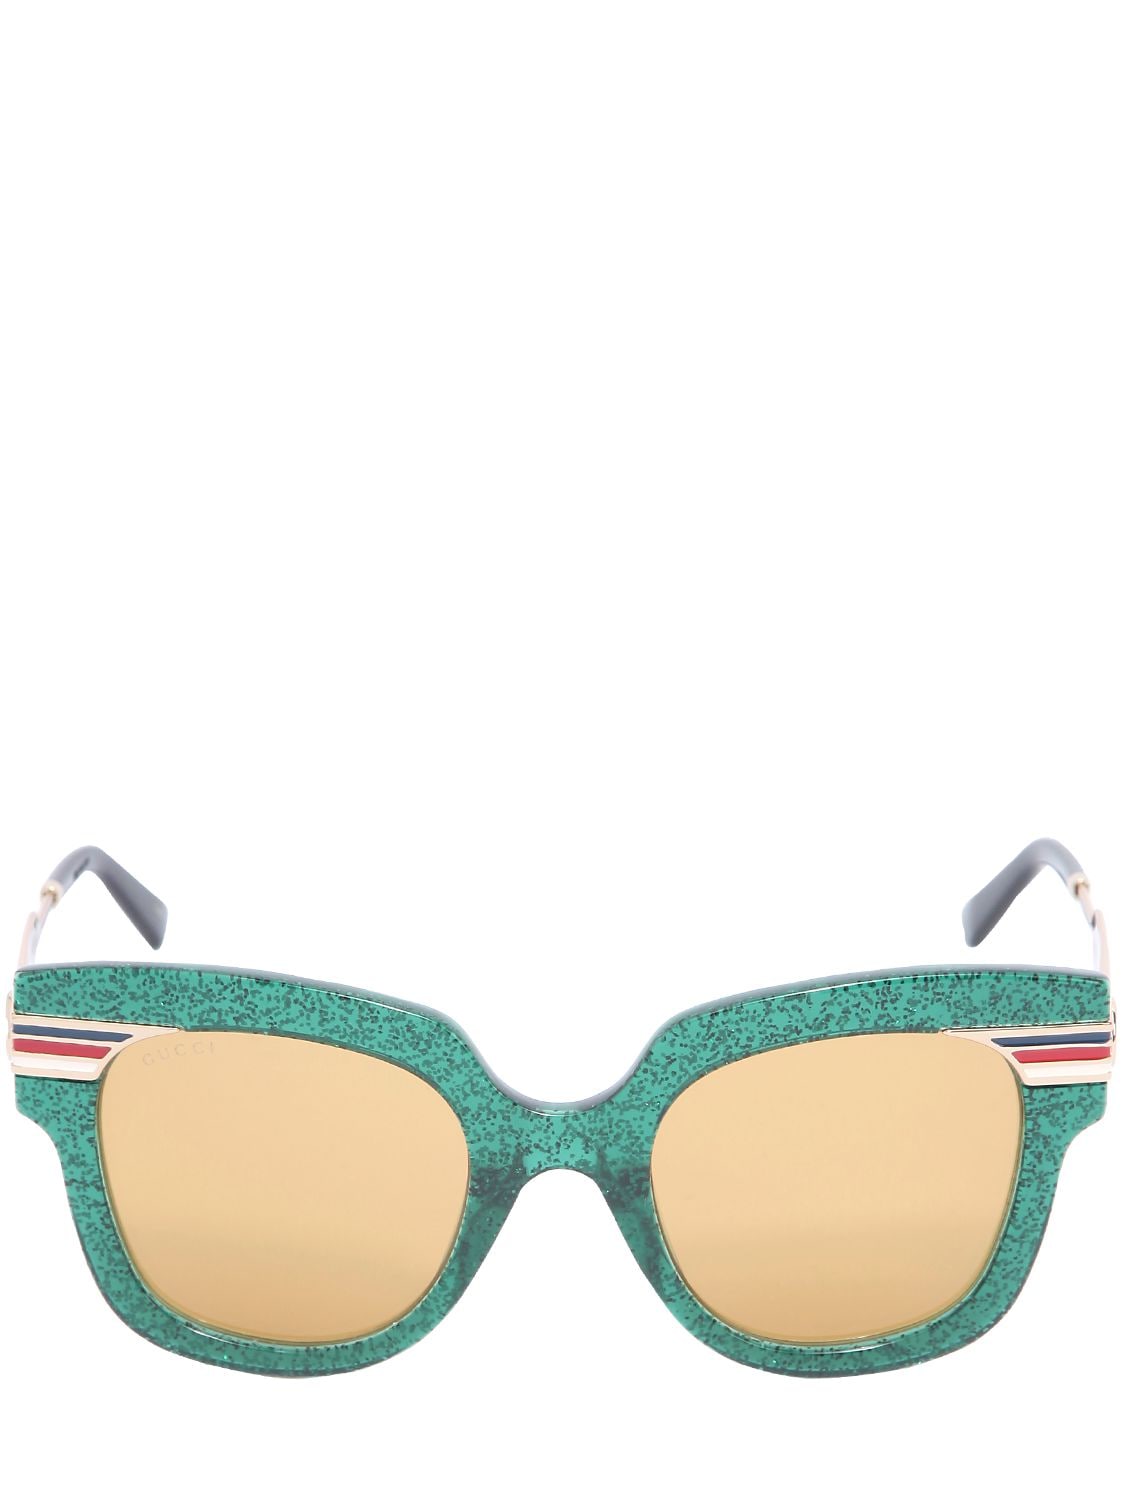 Gucci Square Vintage Web & Glitter Sunglasses In Green